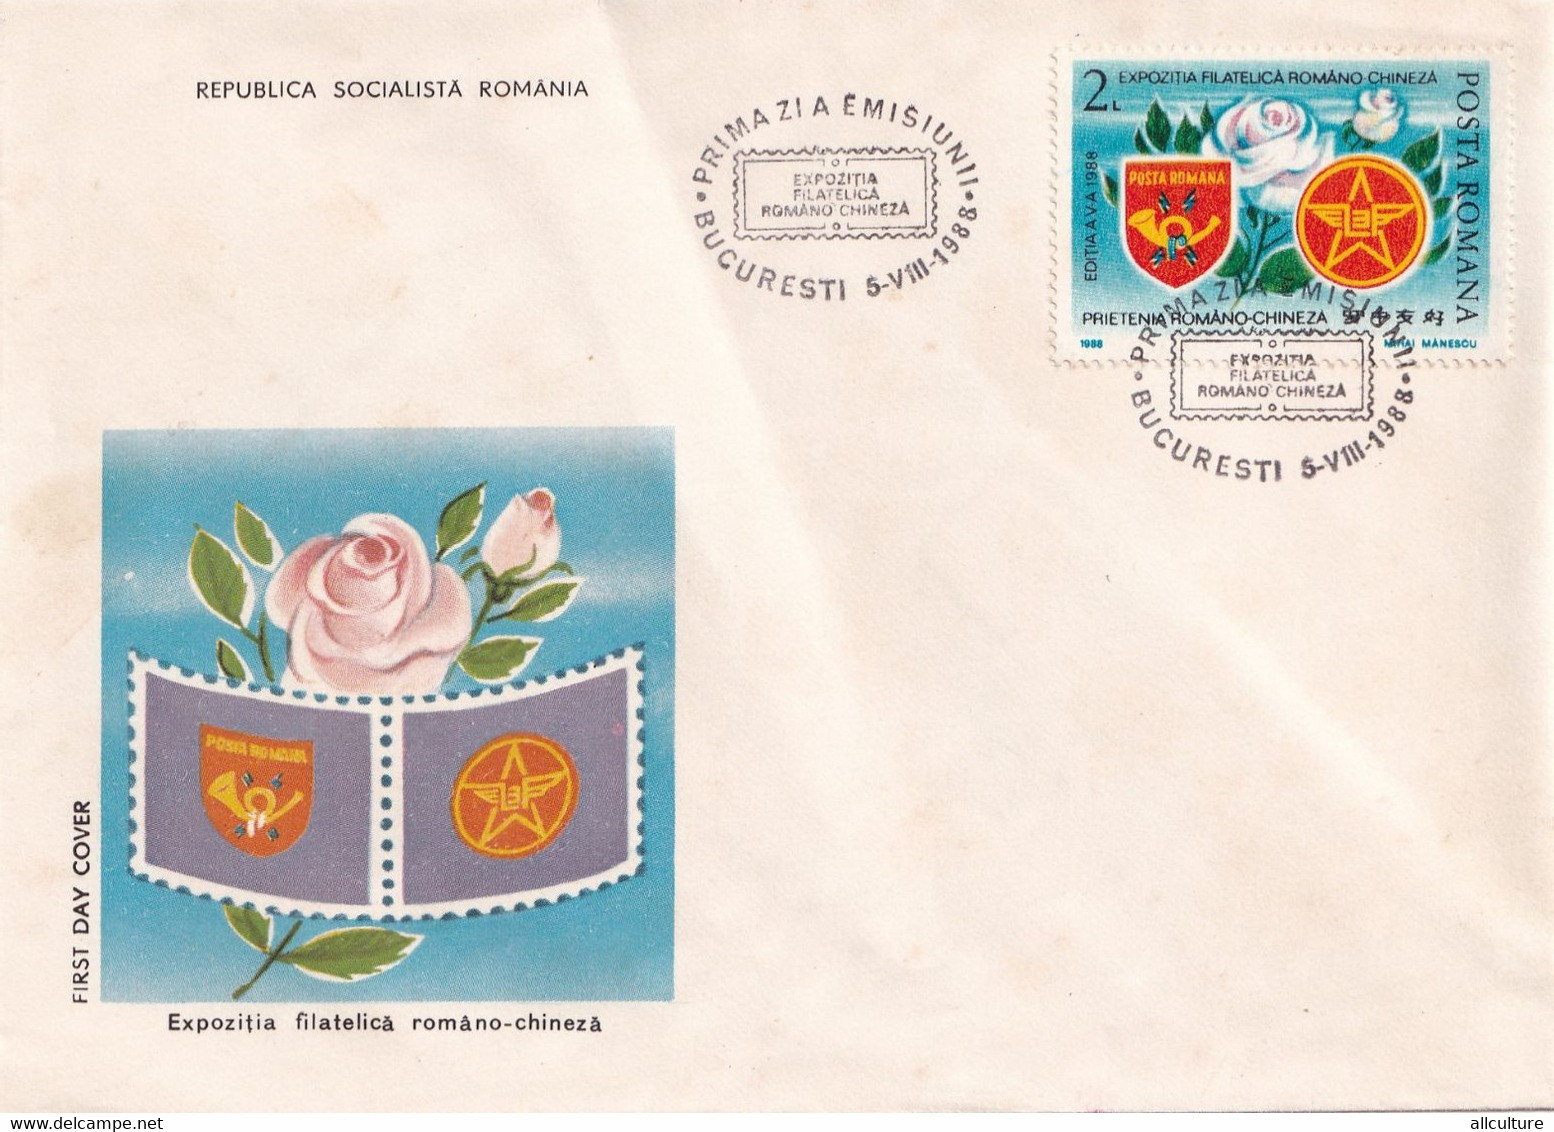 A2689- Expozitia Filatelica Romano-chineza, Republica Socialista Romania, Bucuresti 1988, First Day Cover - FDC